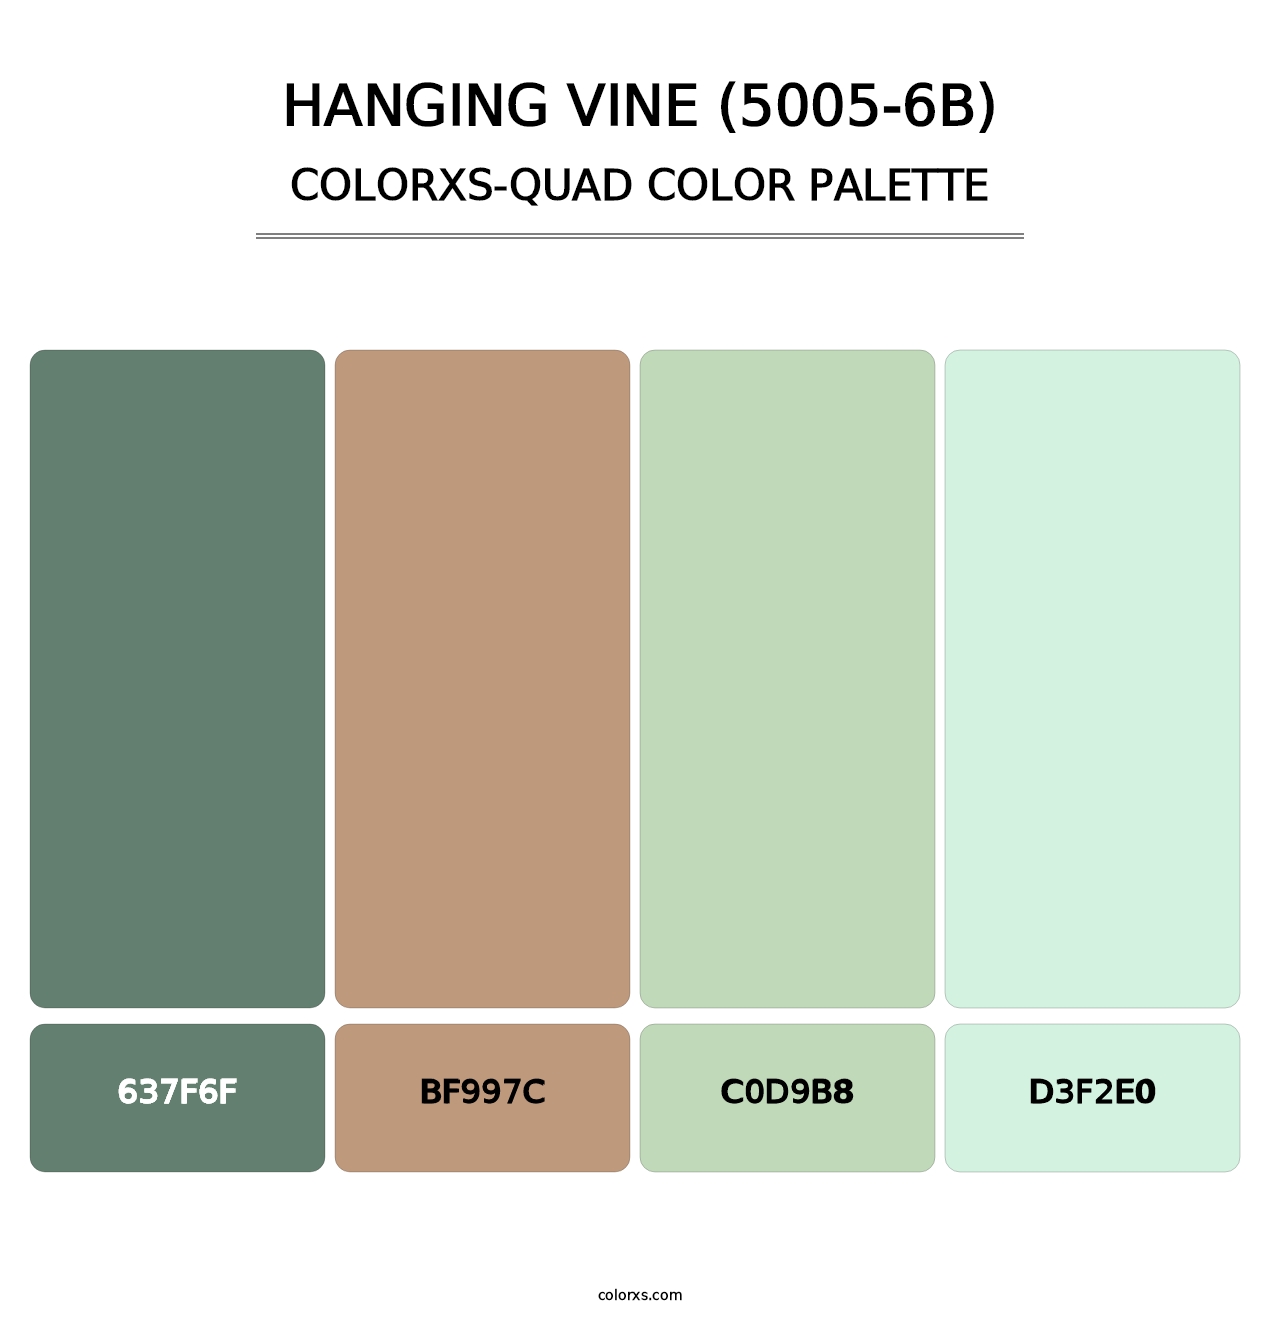 Hanging Vine (5005-6B) - Colorxs Quad Palette